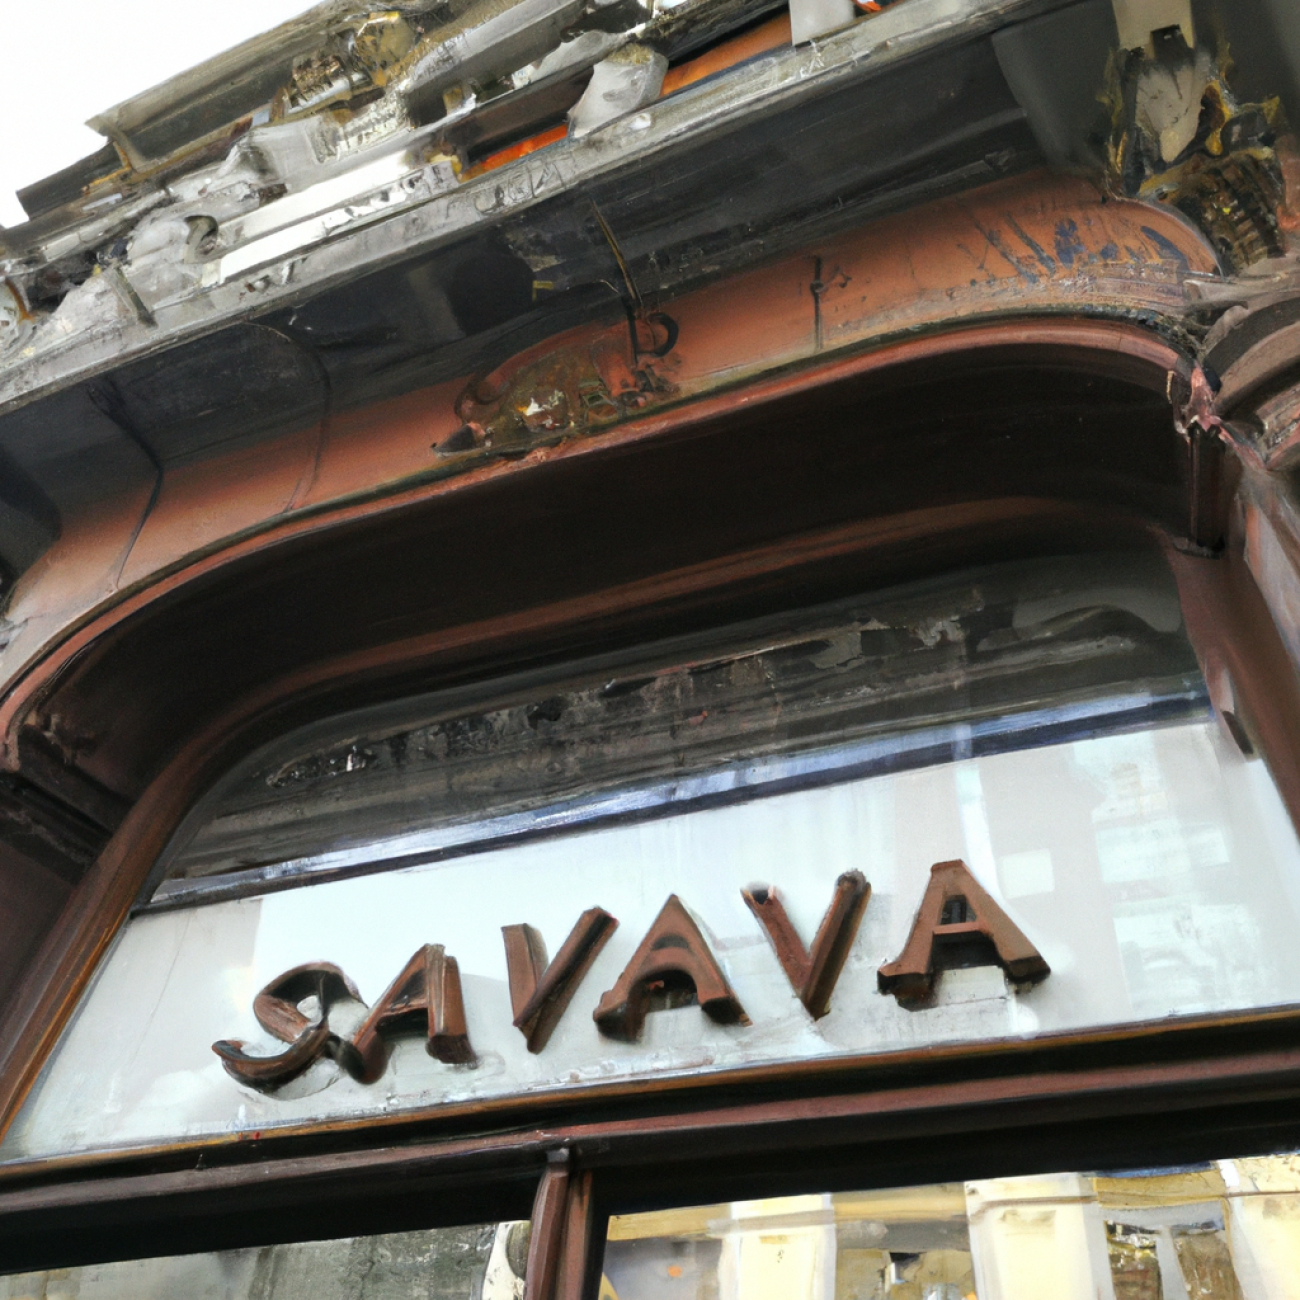 3. Café Slavia